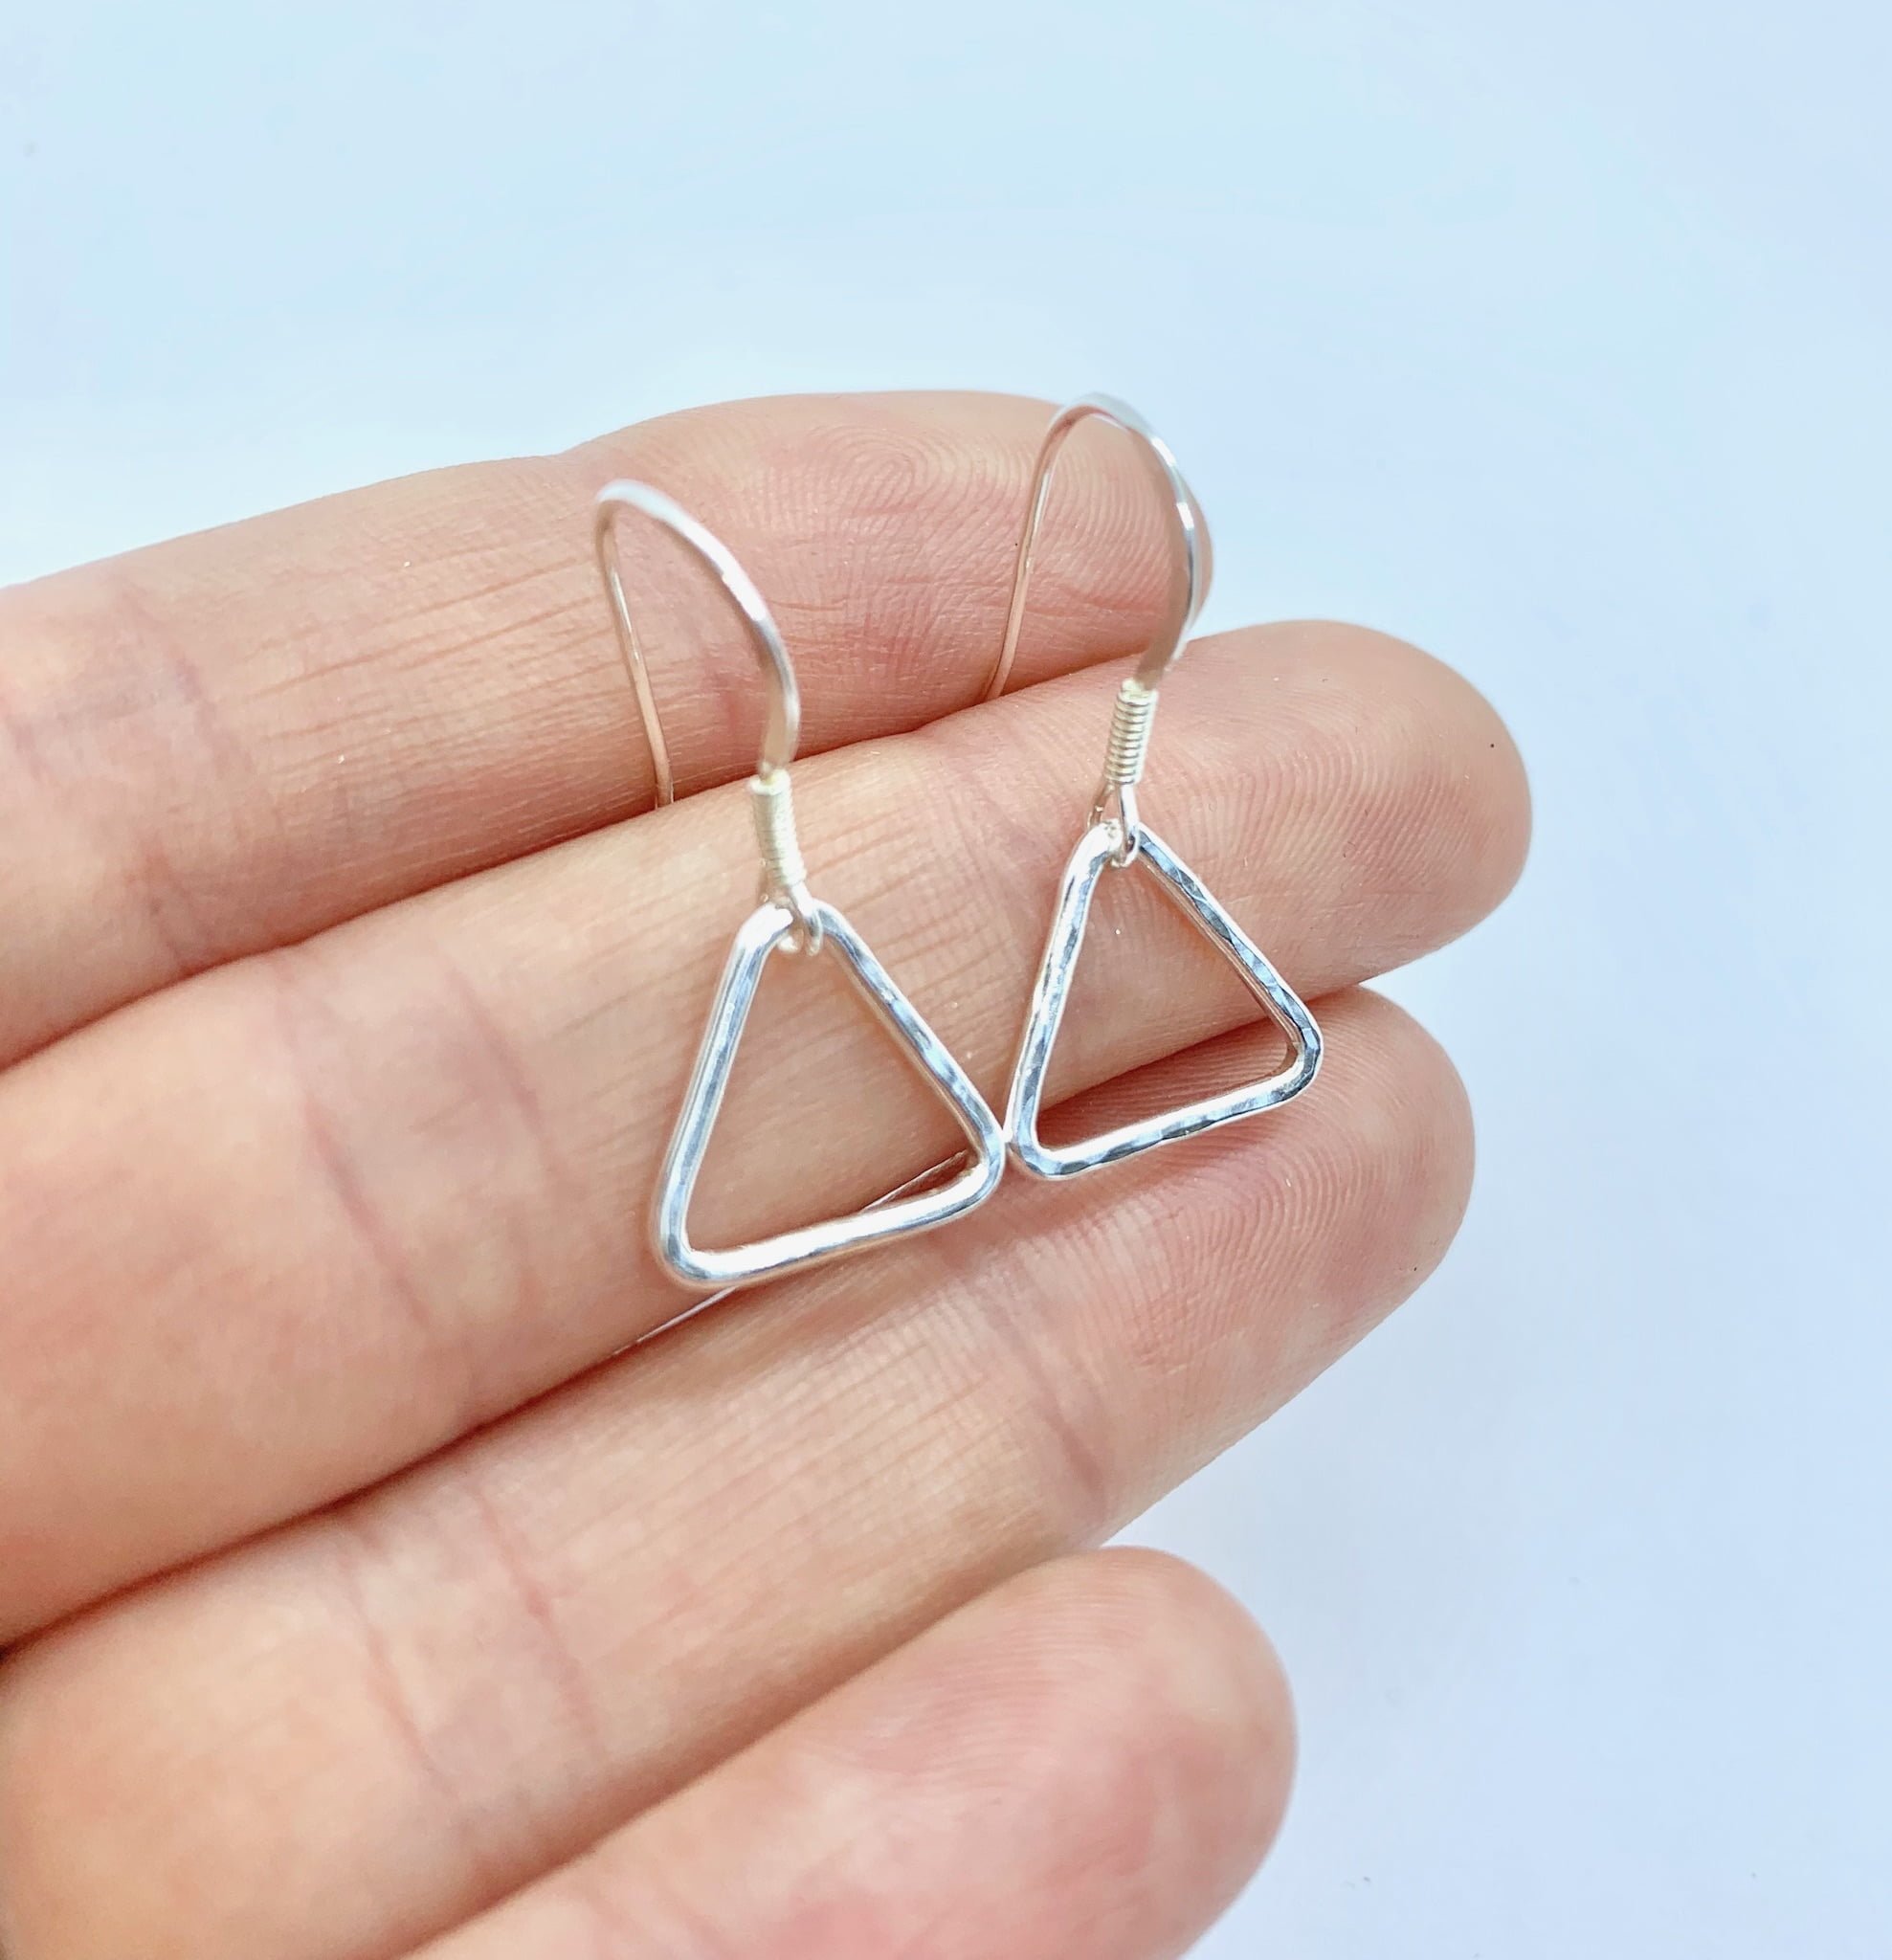 Silver triangle earrings